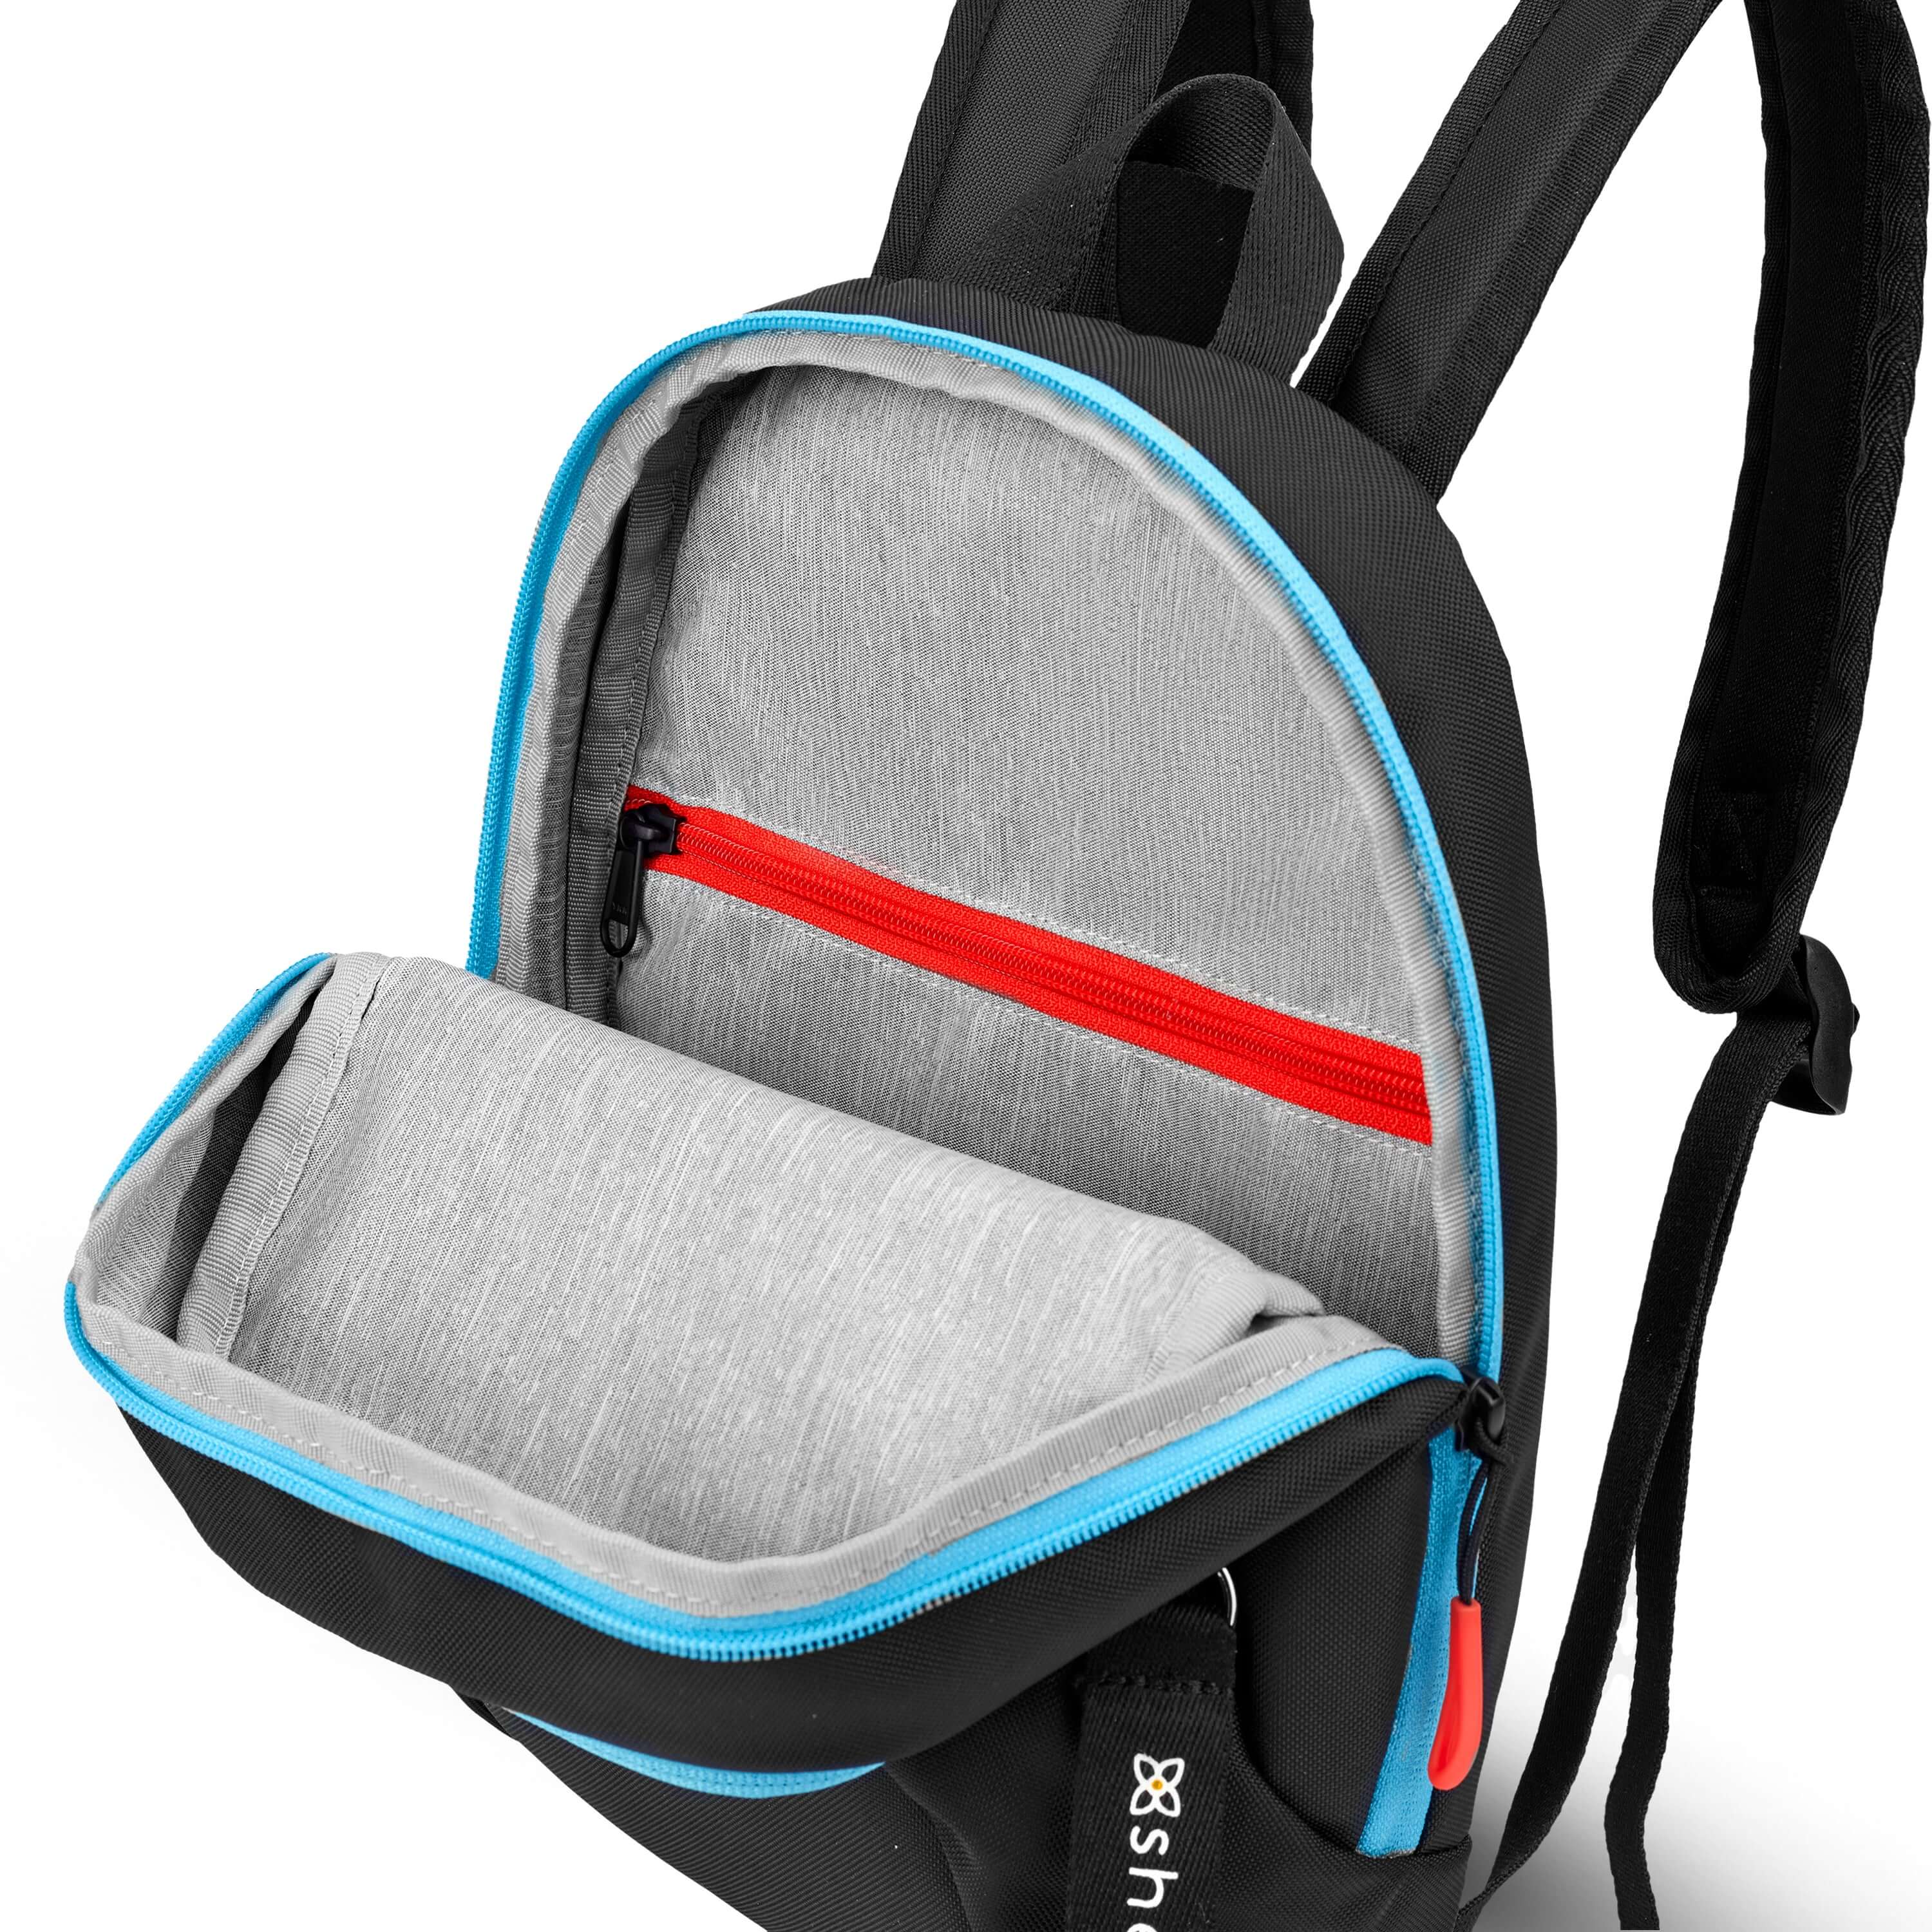 Zippered Mini Backpack